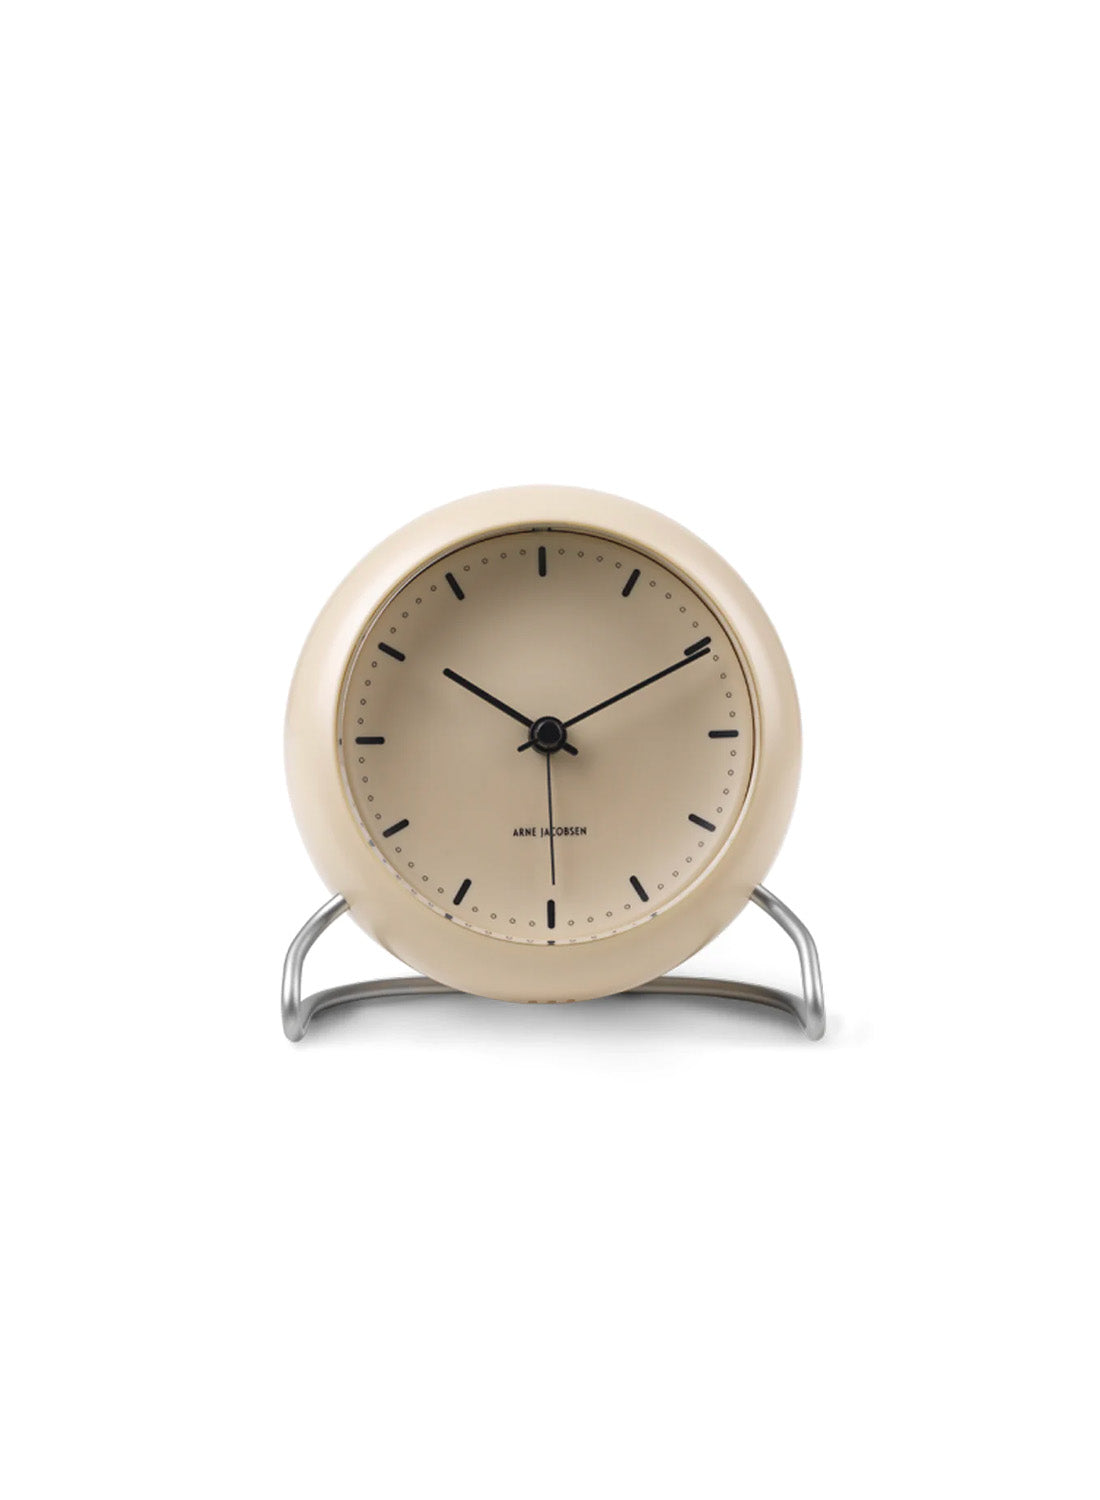 Arne Jacobsen City Hall Alarm Clock , sandy beige